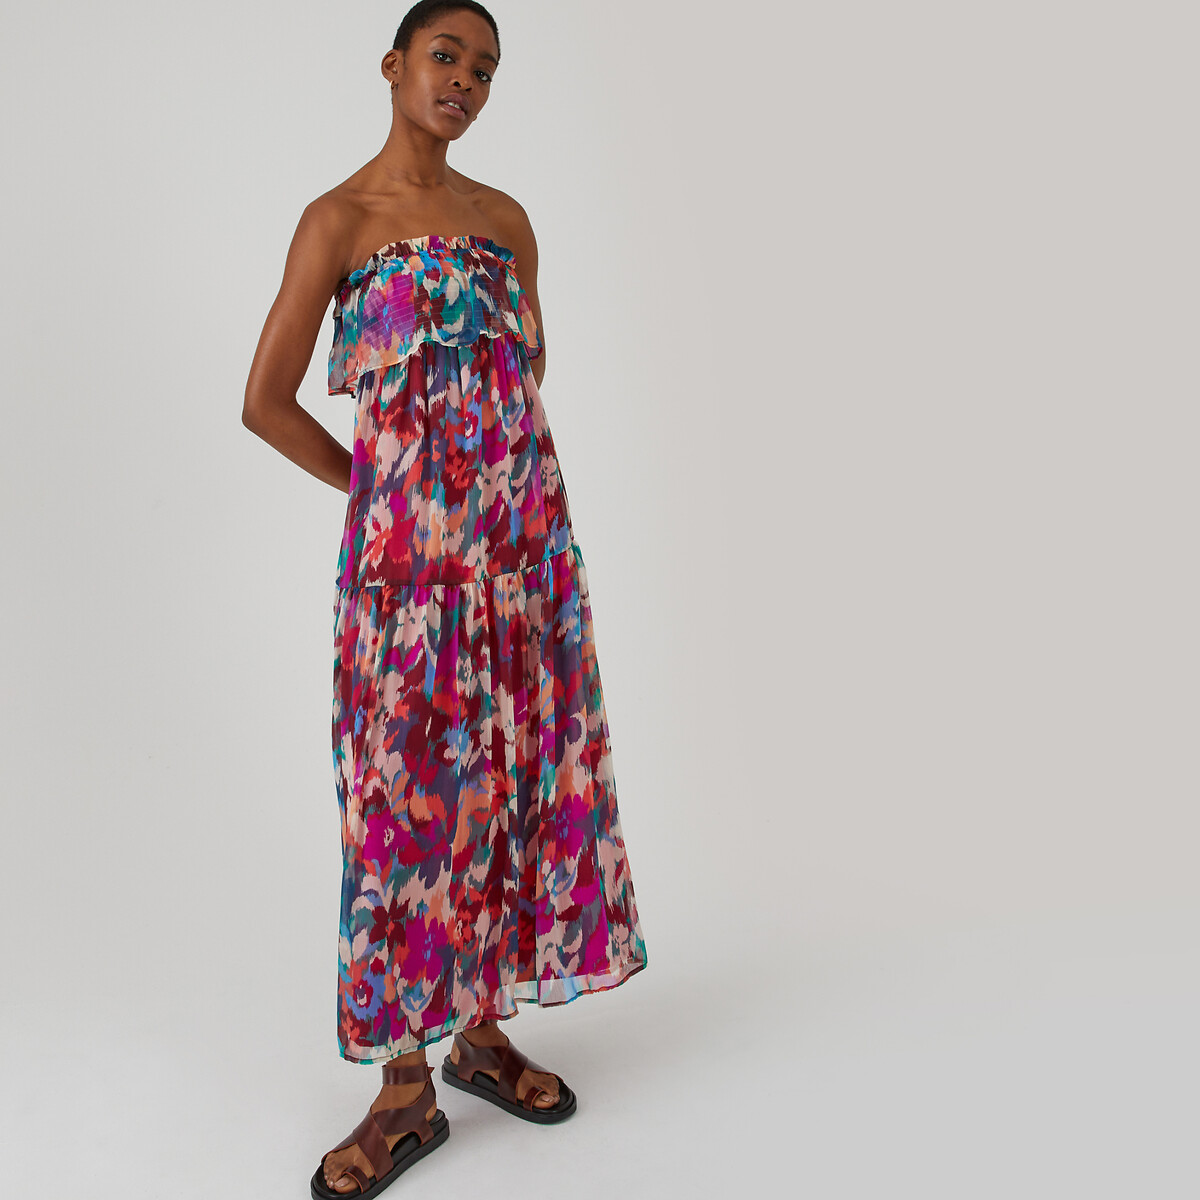 Μακρύ στράπλες φόρεμα με φλοράλ μοτίβο